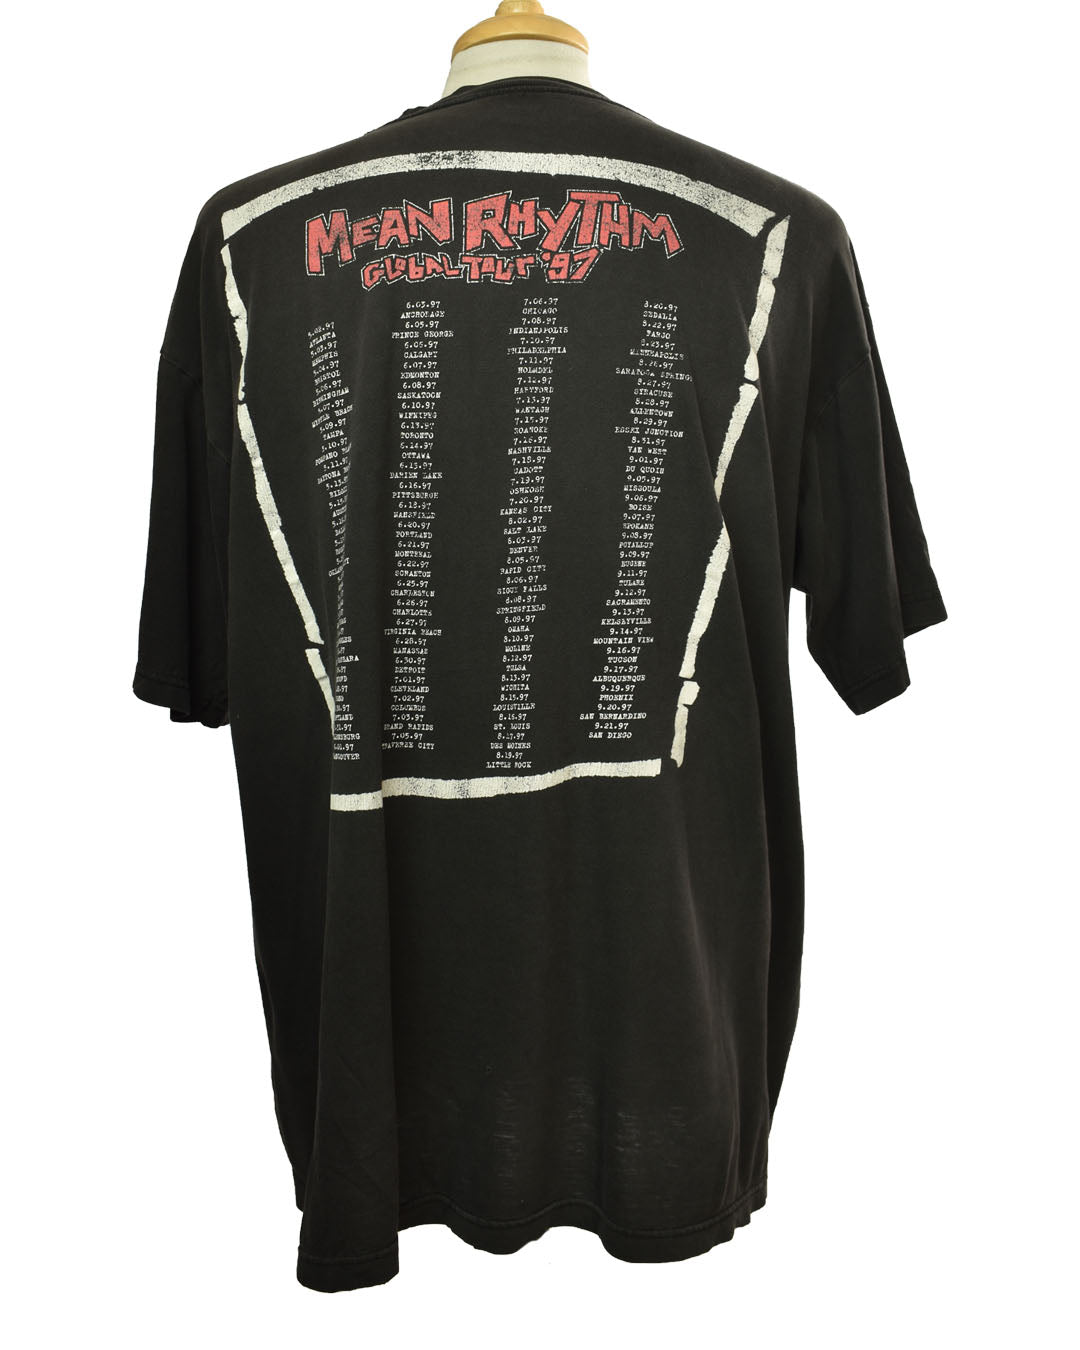 Vintage 1997 ZZ Top Mean Rhythm Global Tour T-shirt Size XL